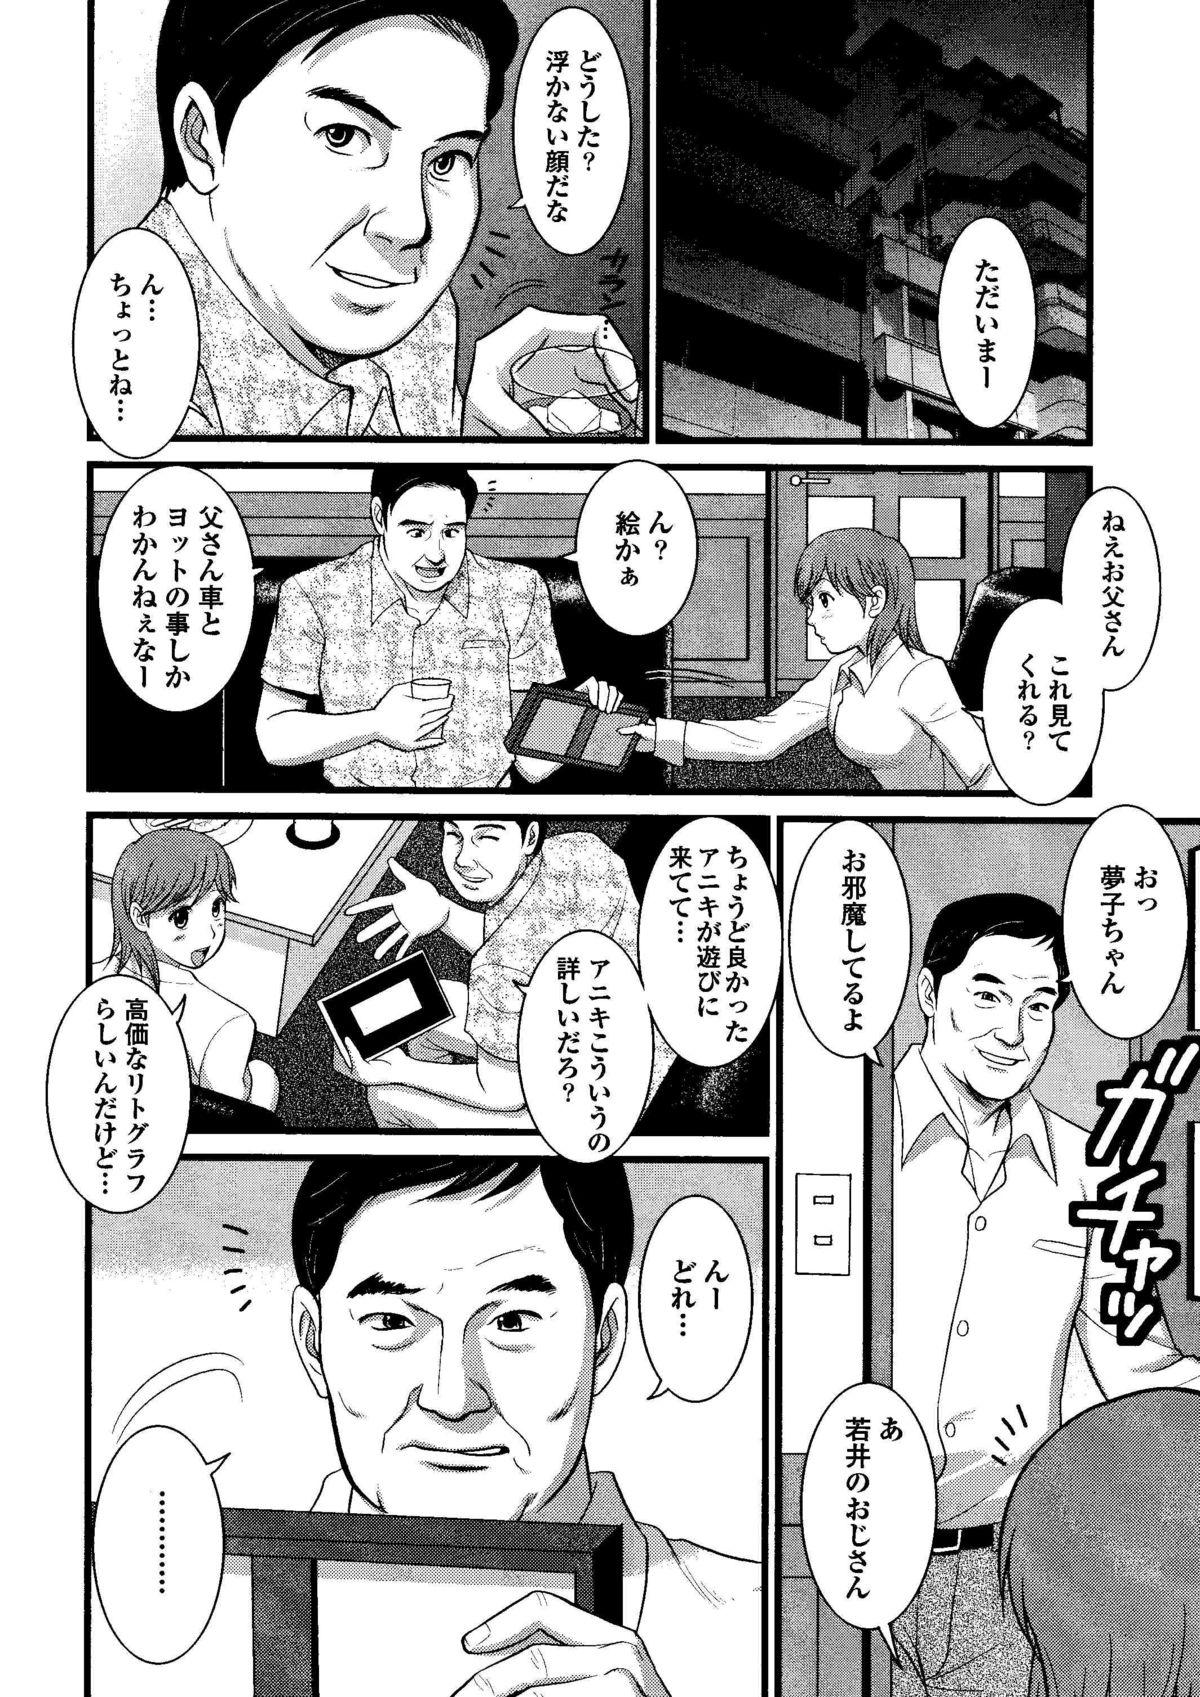 Culazo Haken no Muuko-san 8 Pigtails - Page 9